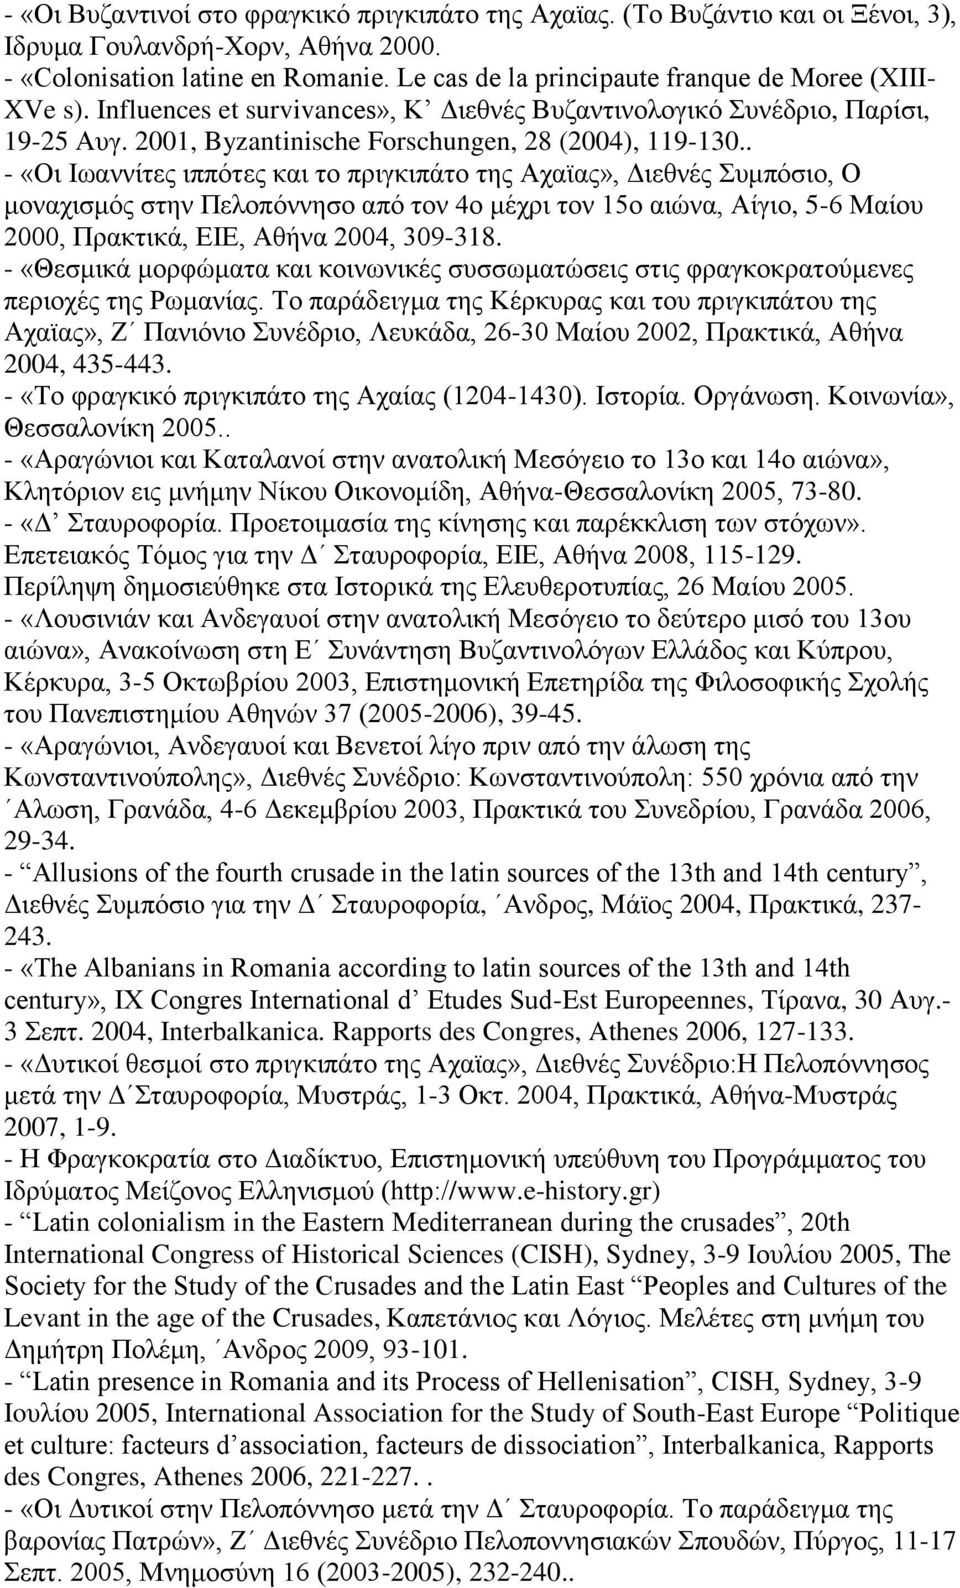 . - «Oι Ιωαννίτες ιππότες και το πριγκιπάτο της Αχαϊας», Διεθνές Συμπόσιο, Ο μοναχισμός στην Πελοπόννησο από τον 4ο μέχρι τον 15ο αιώνα, Αίγιο, 5-6 Μαίου 2000, Πρακτικά, EIE, Aθήνα 2004, 309-318.